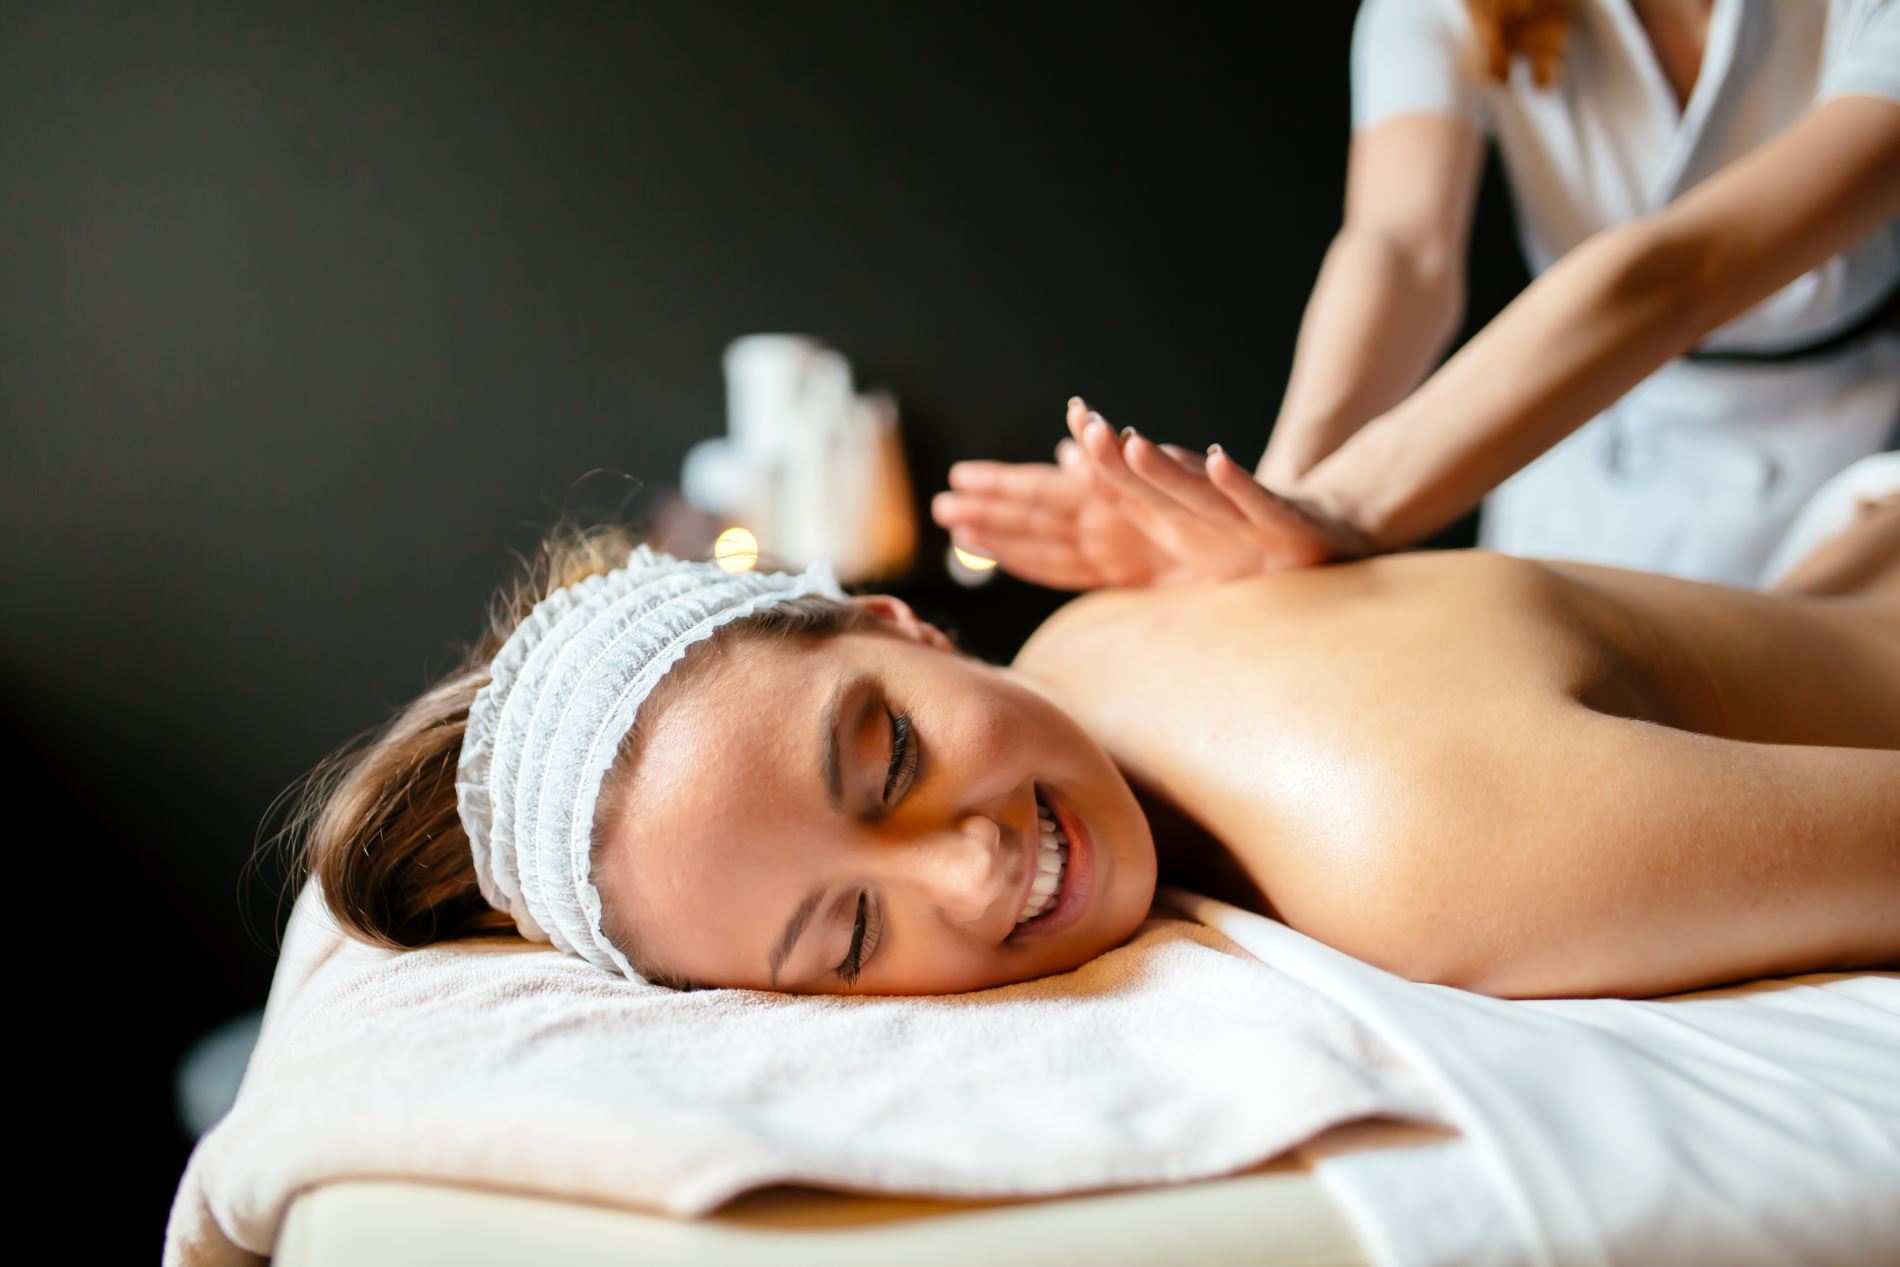 Relaxation Massage - Elite Hairstyling & Esthetics